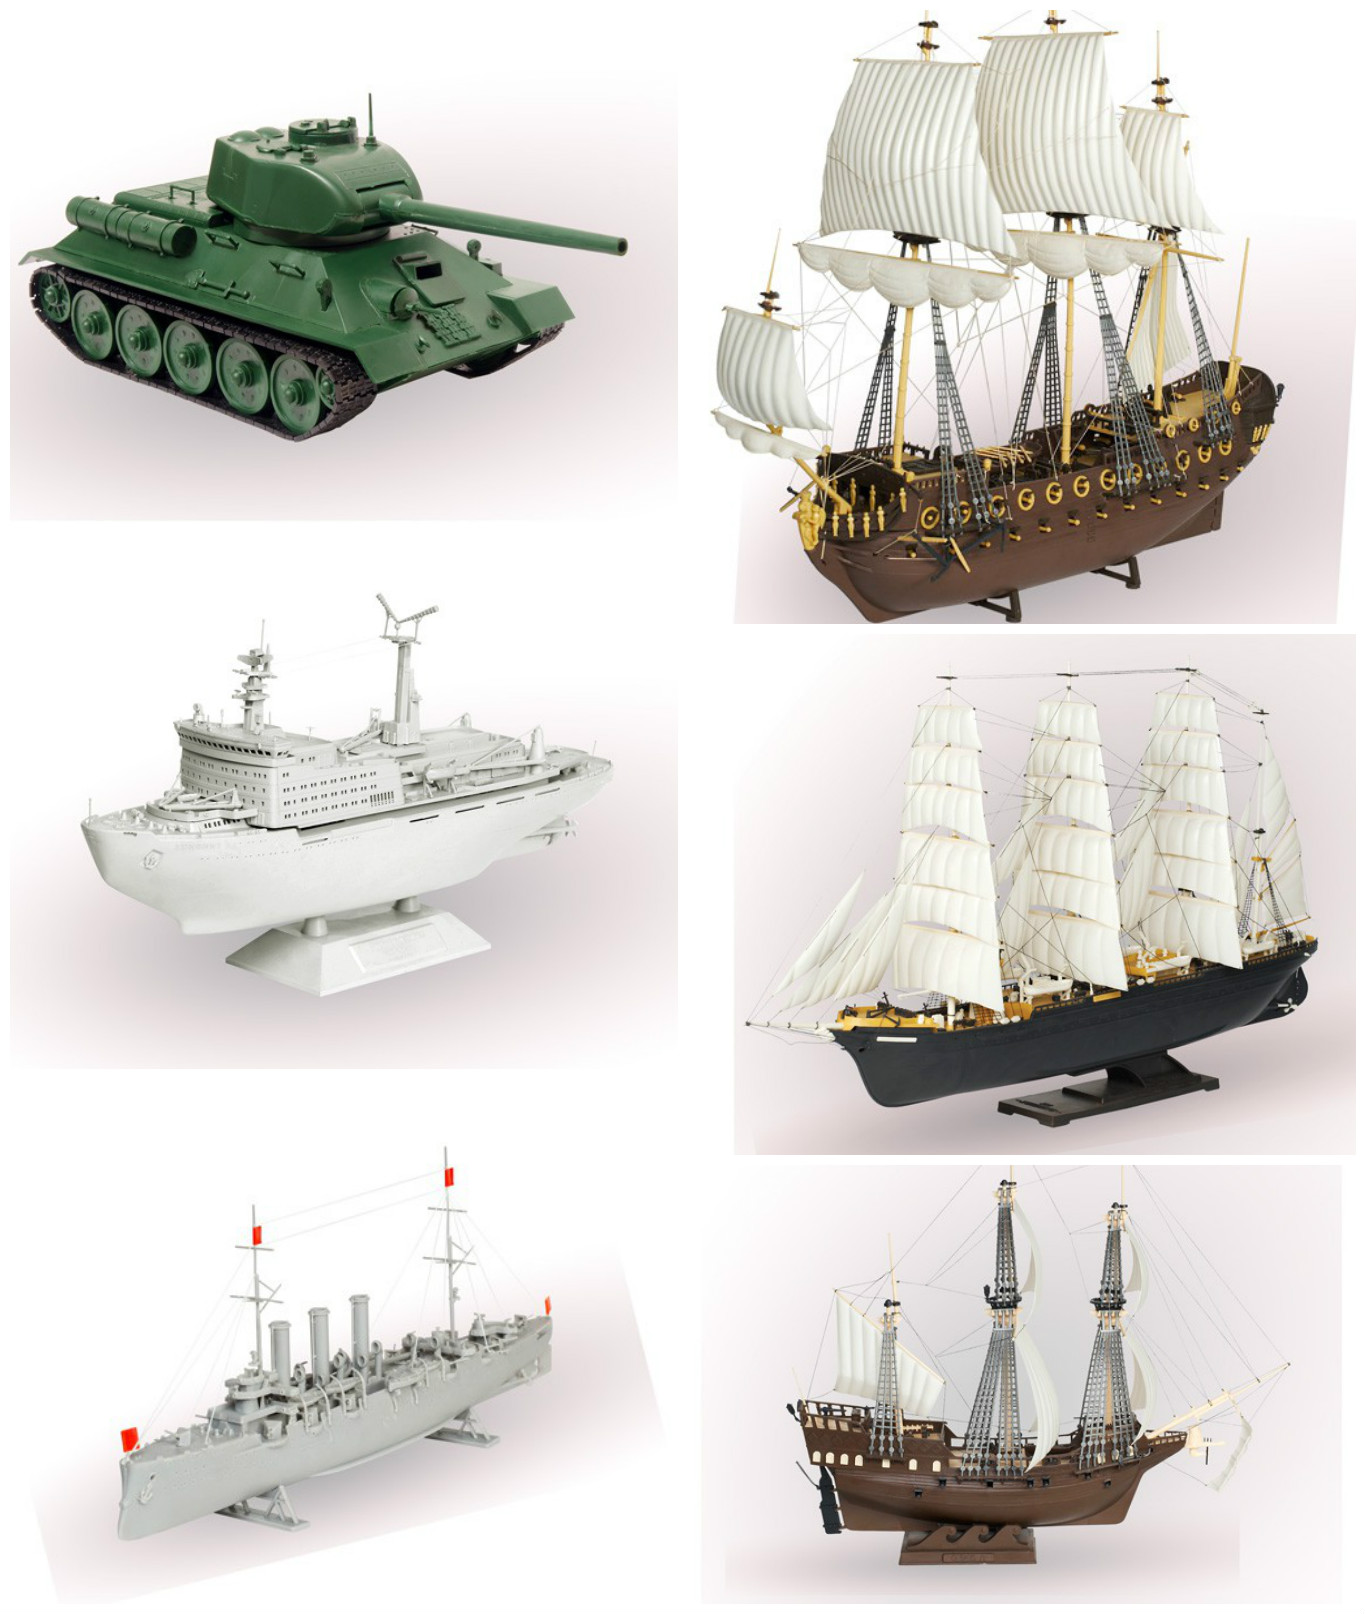 Сборка моделей кораблей из пластика. Модель для склеивания корабль. Модели военных кораблей для сборки. Модели из пластмассы. Модели кораблей для склеивания из пластика.